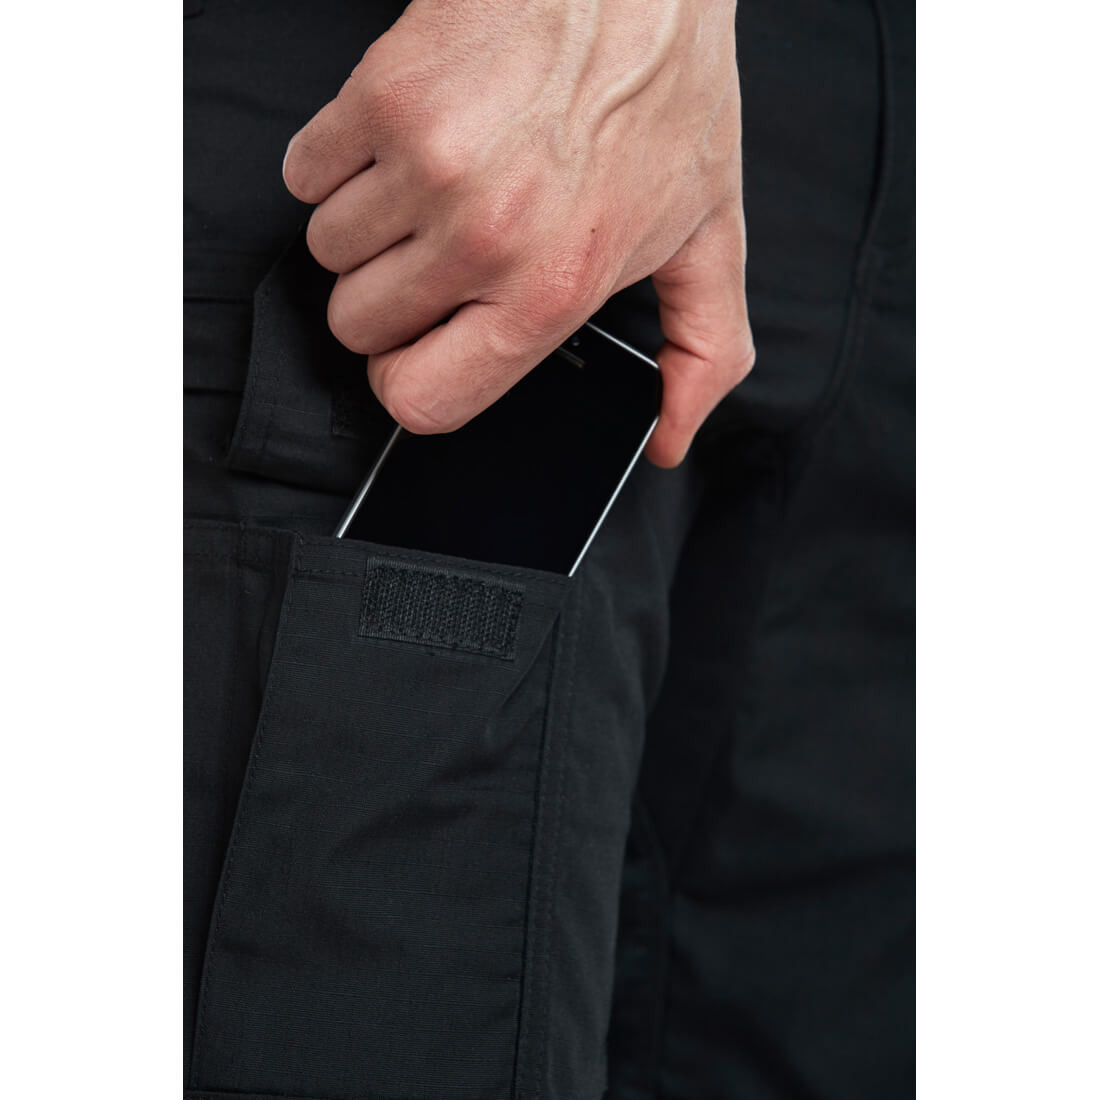 Pantalon KX3 Ripstop - Les vêtements de protection